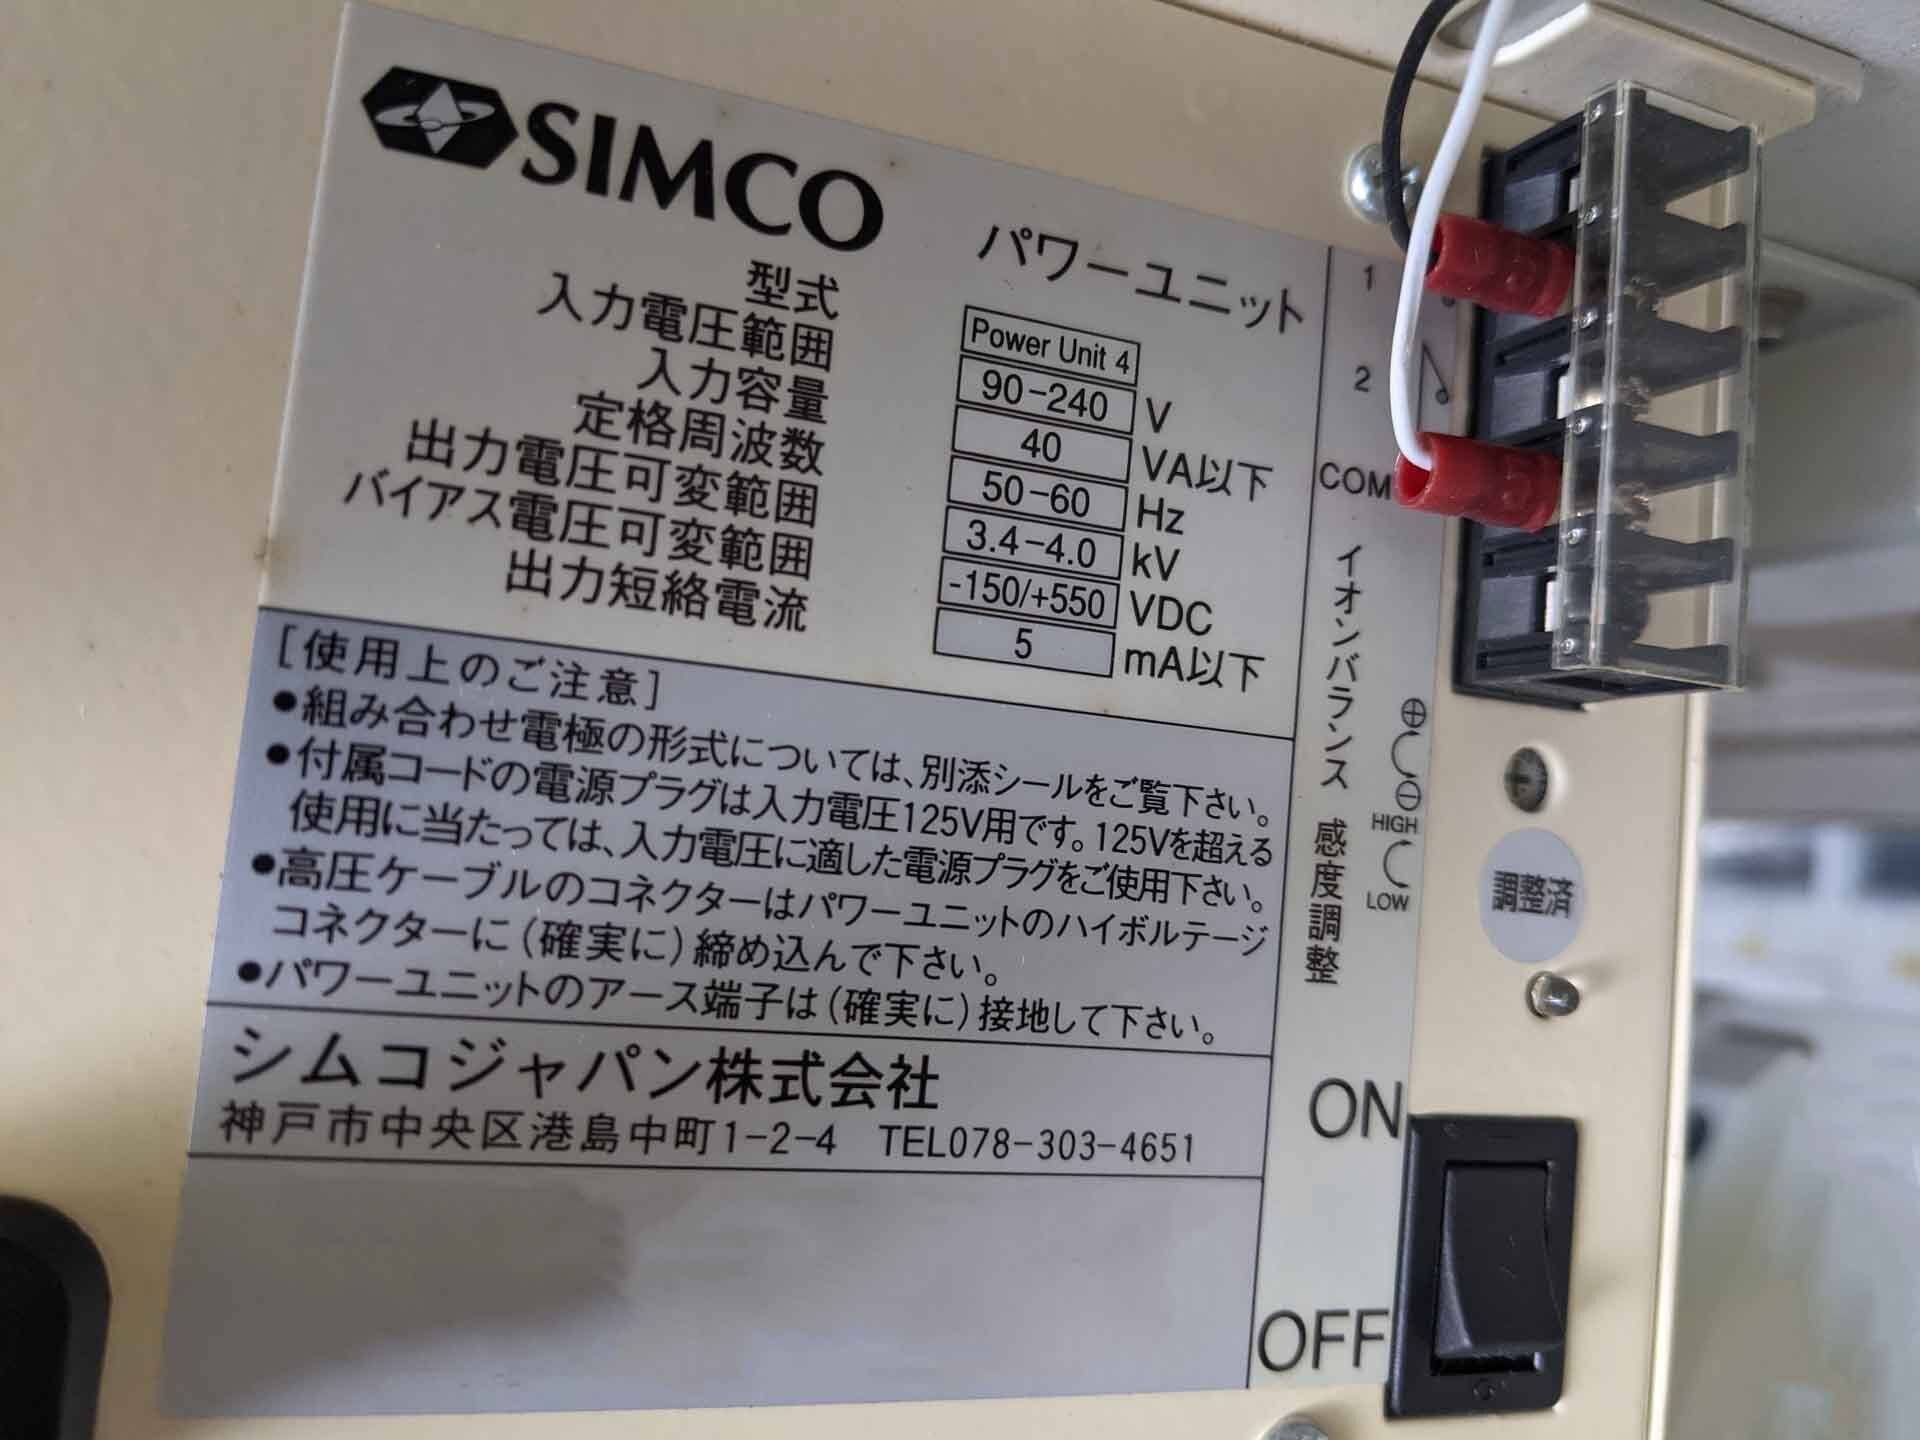 圖為 已使用的 SIMCO Power Unit 7 待售